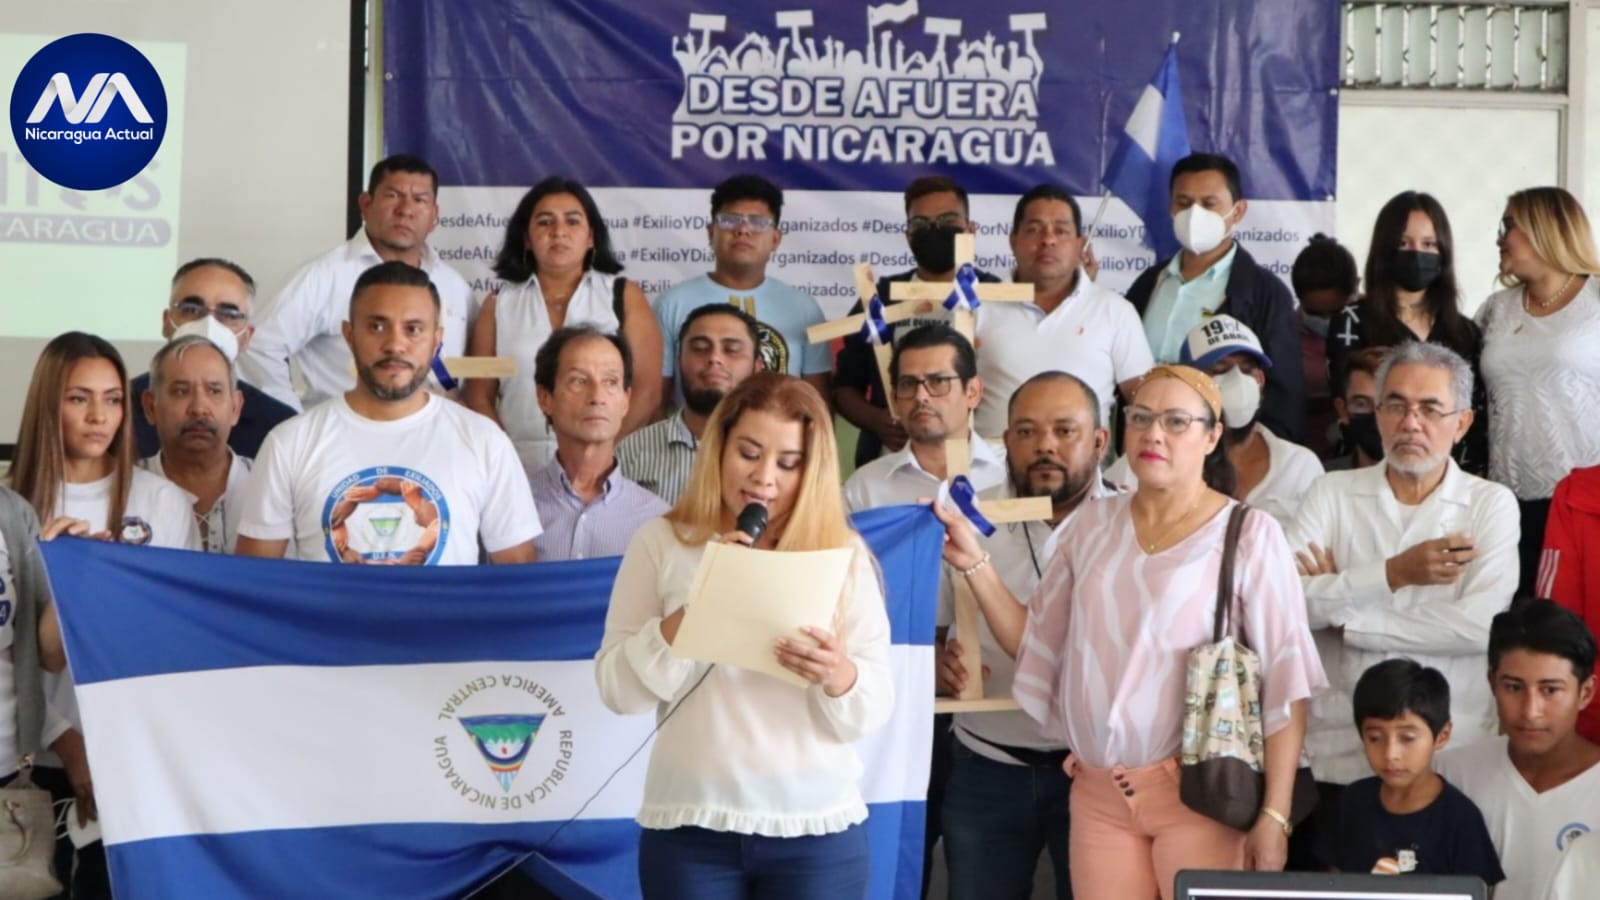 Opositores exiliados piden unidad de organizaciones azul y blanco. Foto: Nicaragua Actual